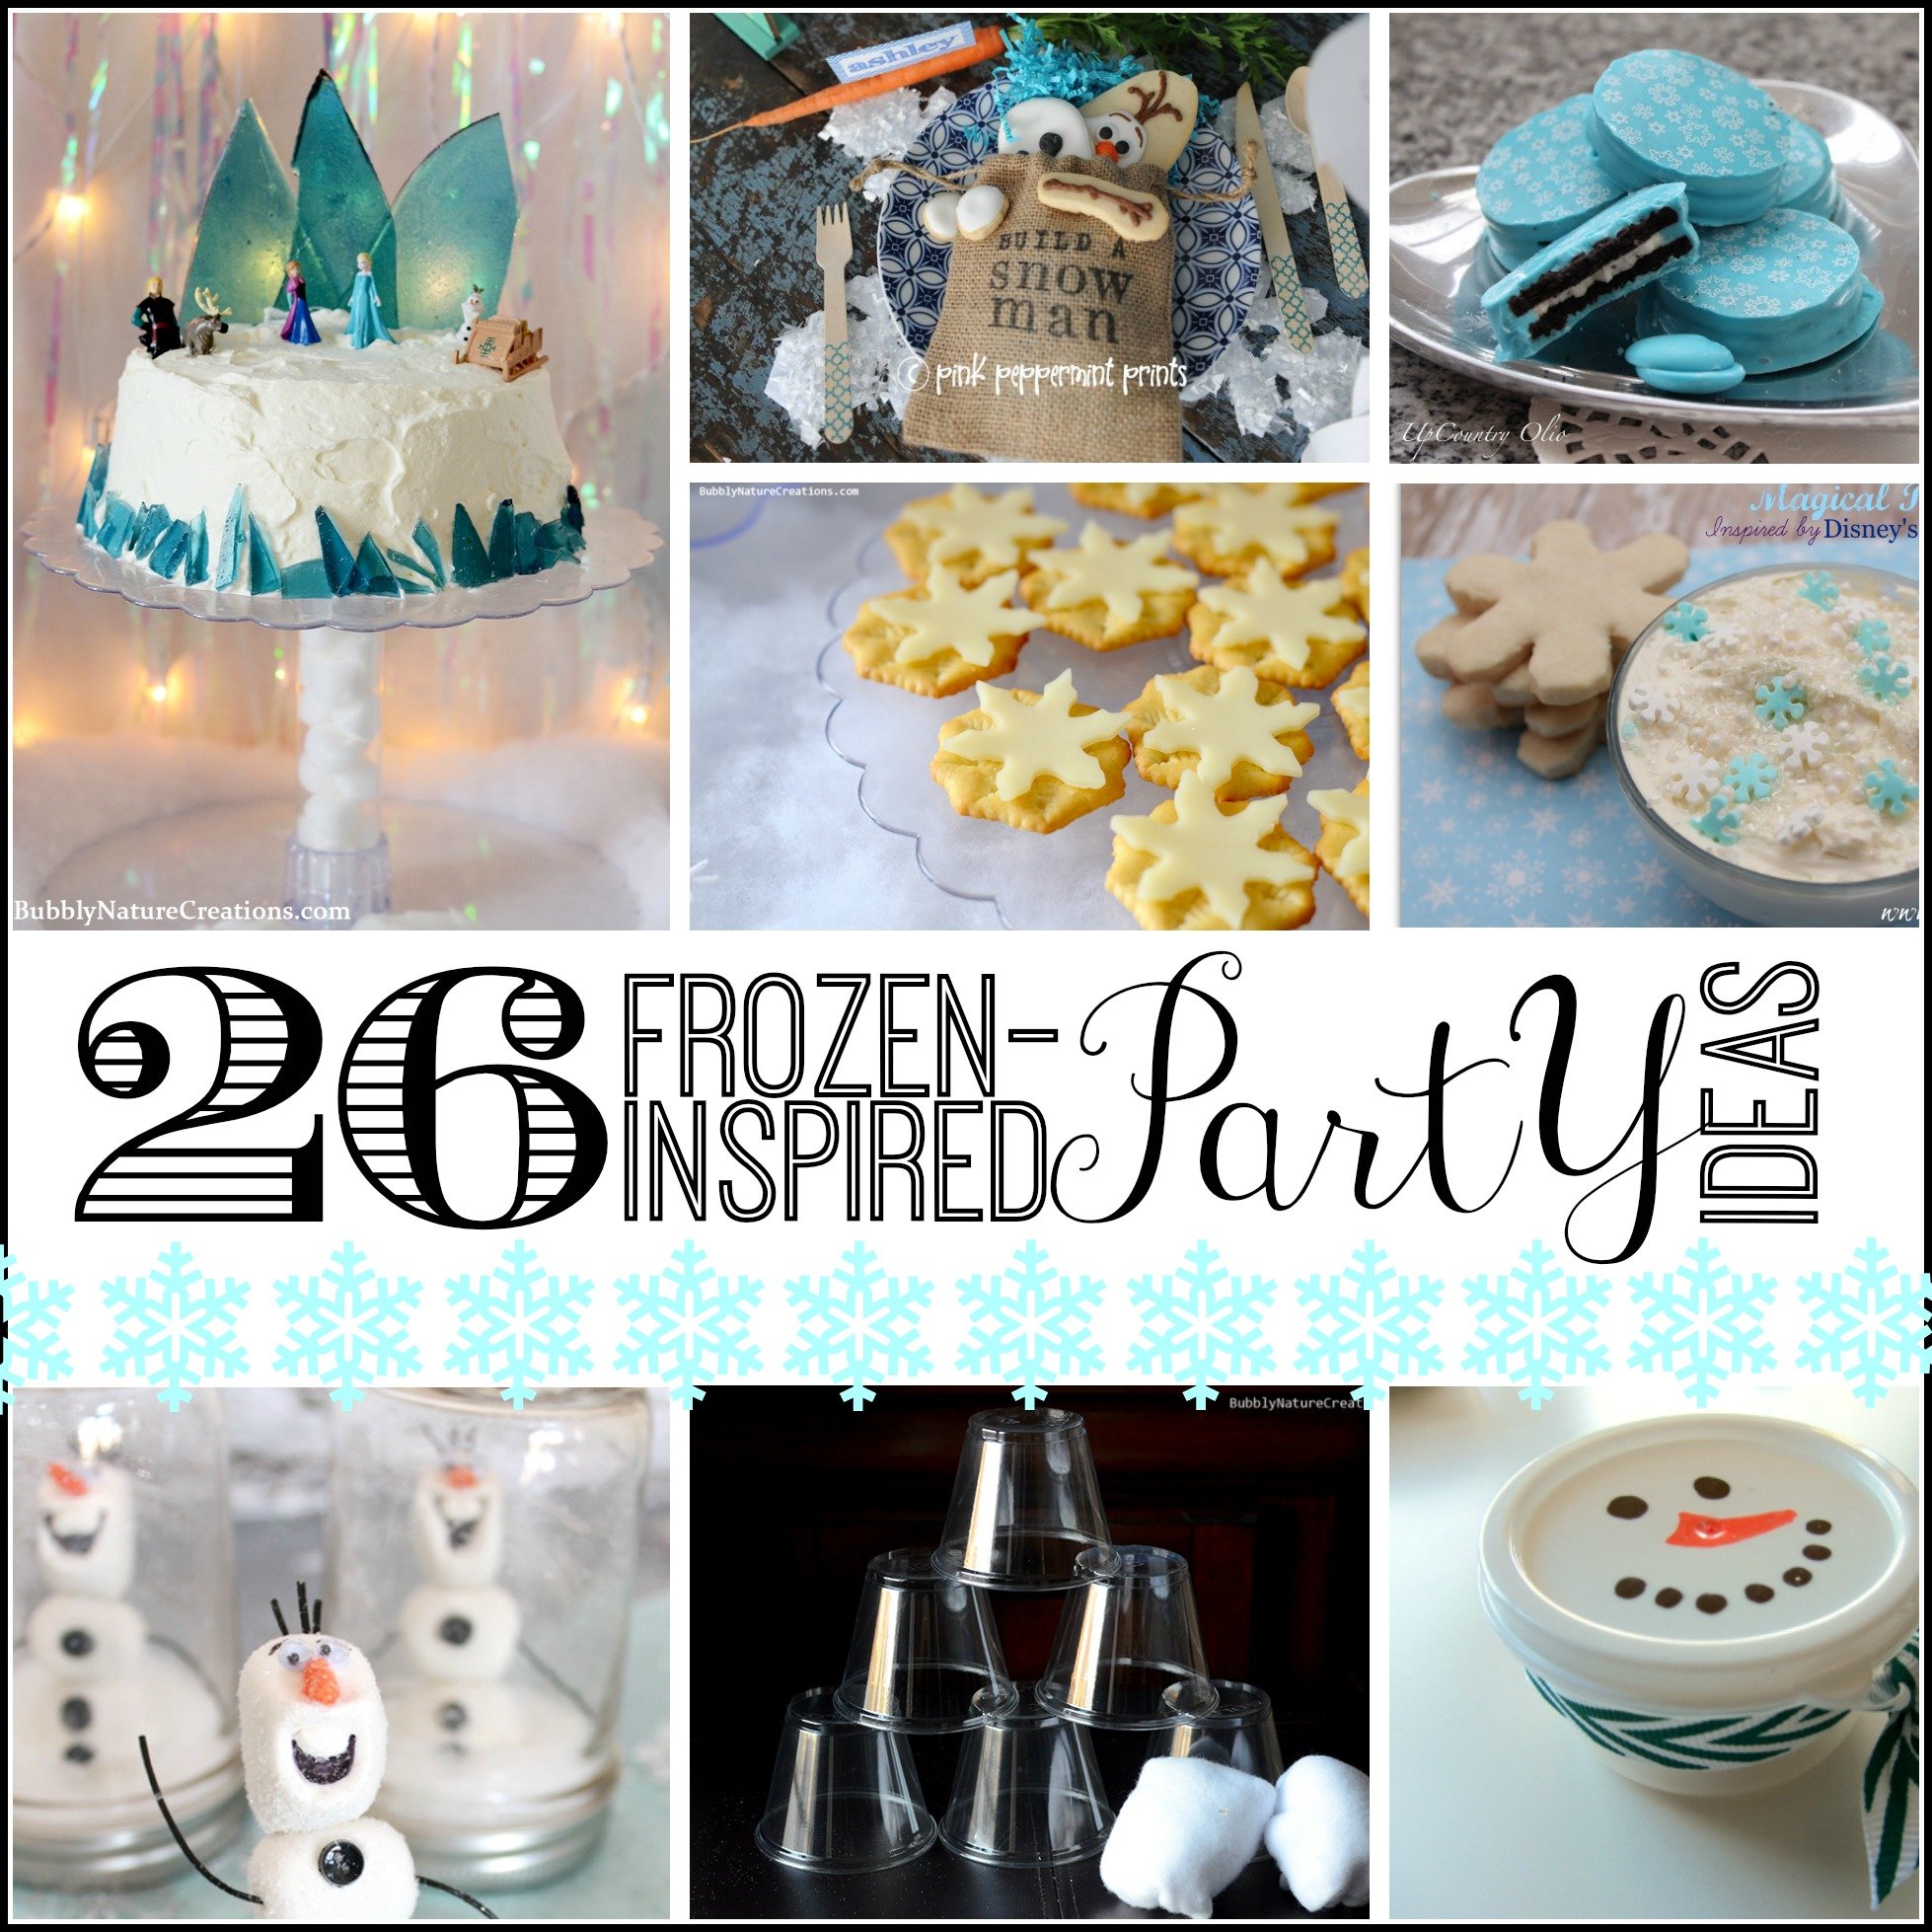 26 Frozen Party Ideas